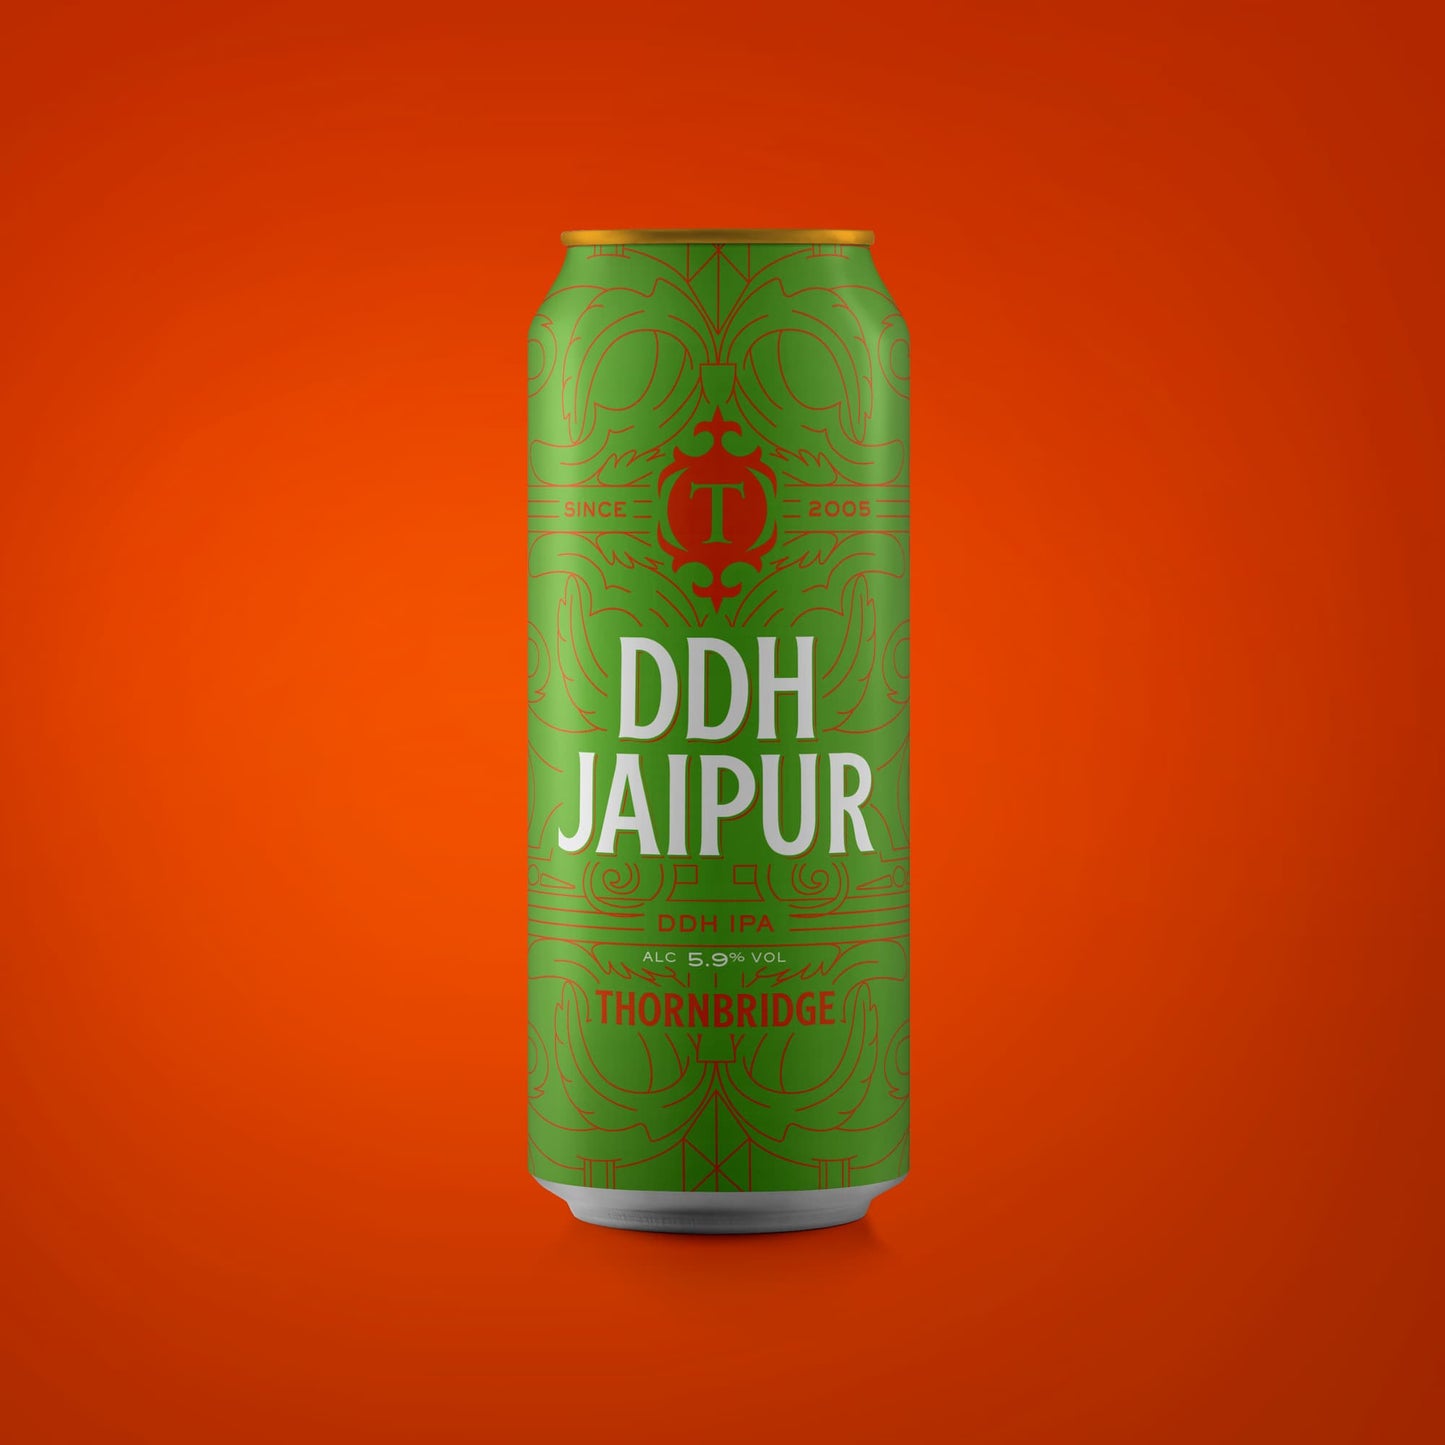 DDH Jaipur, 5.9% DDH IPA 440ml can Beer - Single Can Thornbridge